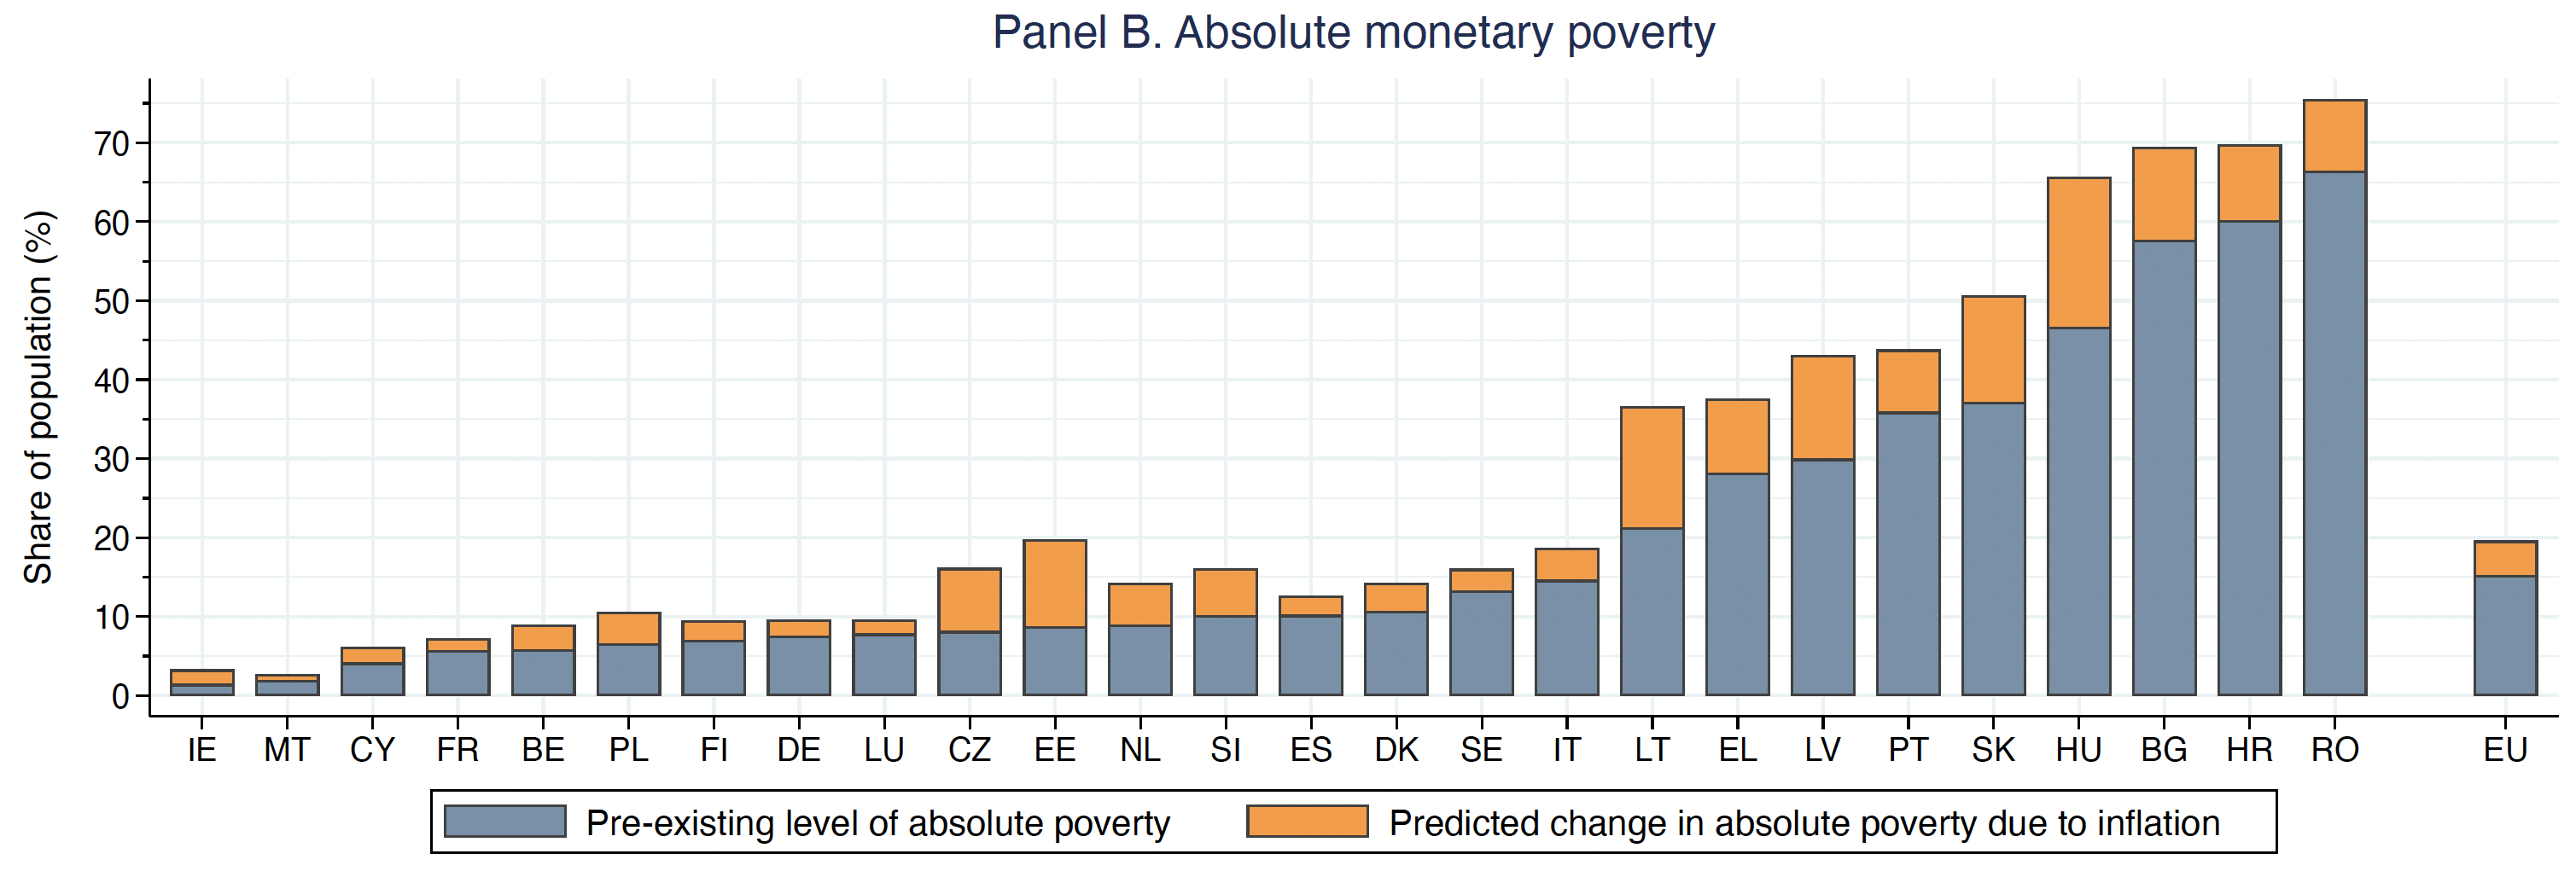 图2b整个欧盟通胀对绝对货币贫困的预期影响